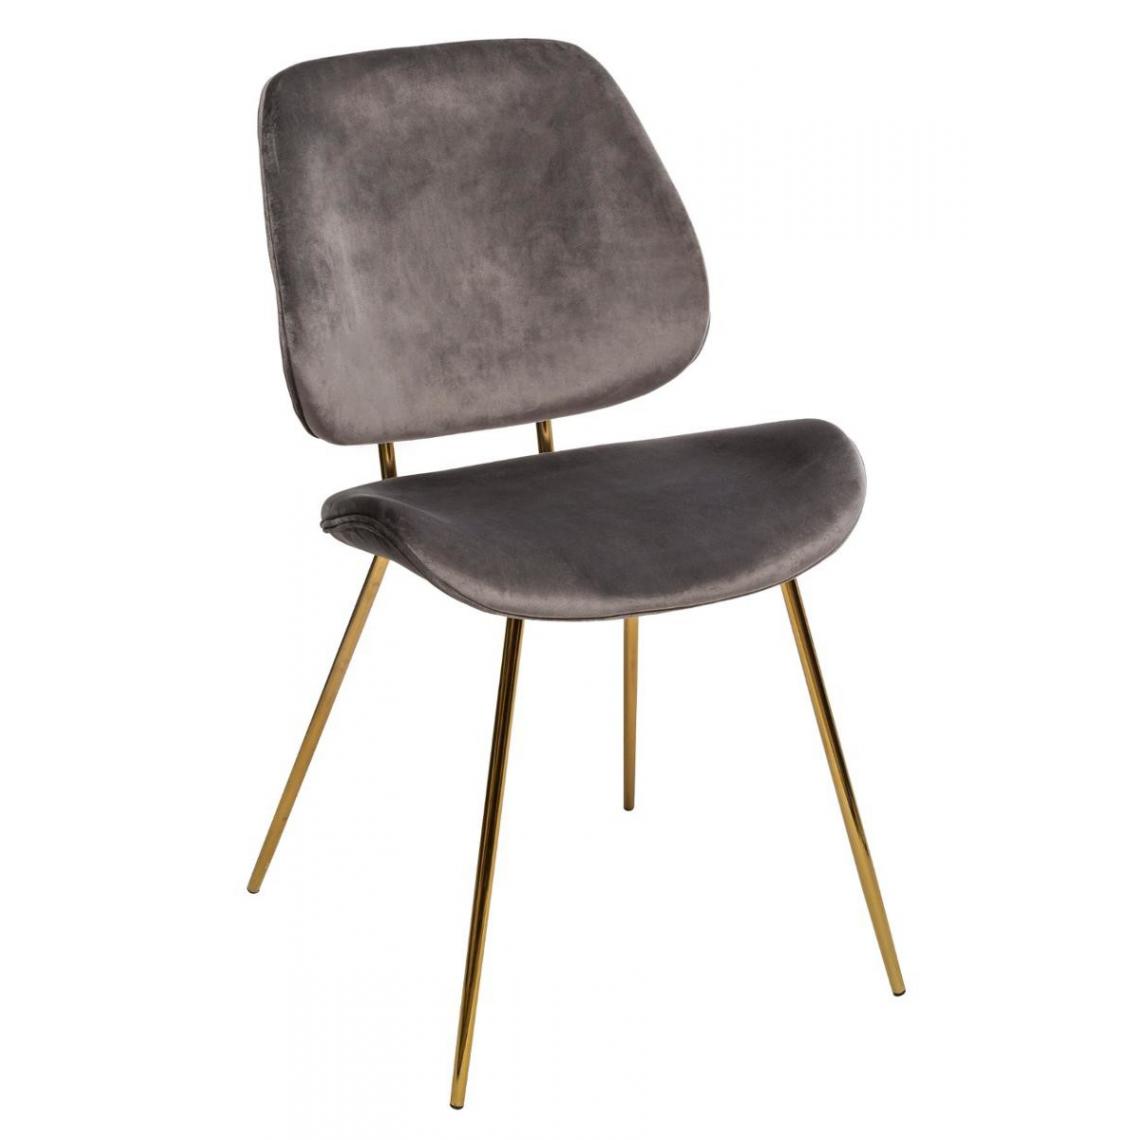 Pegane - Lot de 2 chaises coloris gris en velours - L. 47 x l. 54,5 x H. 82,5 cm - Chaises